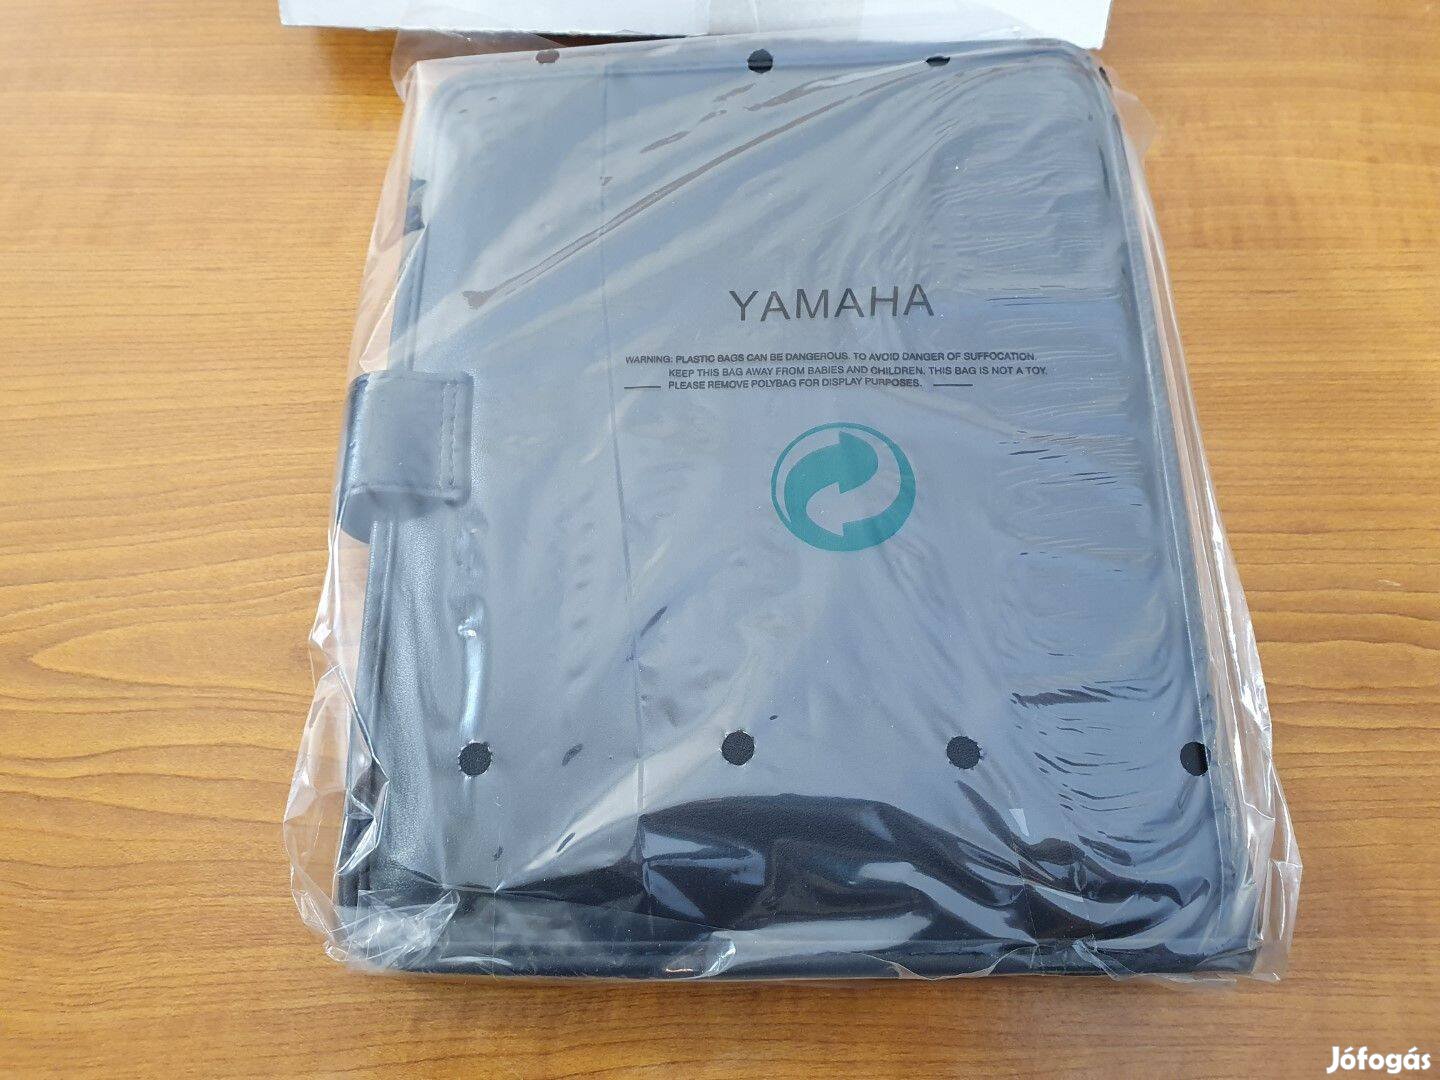 Yamaha Bőr Filofax, irat és kártyatartó - Új 16975